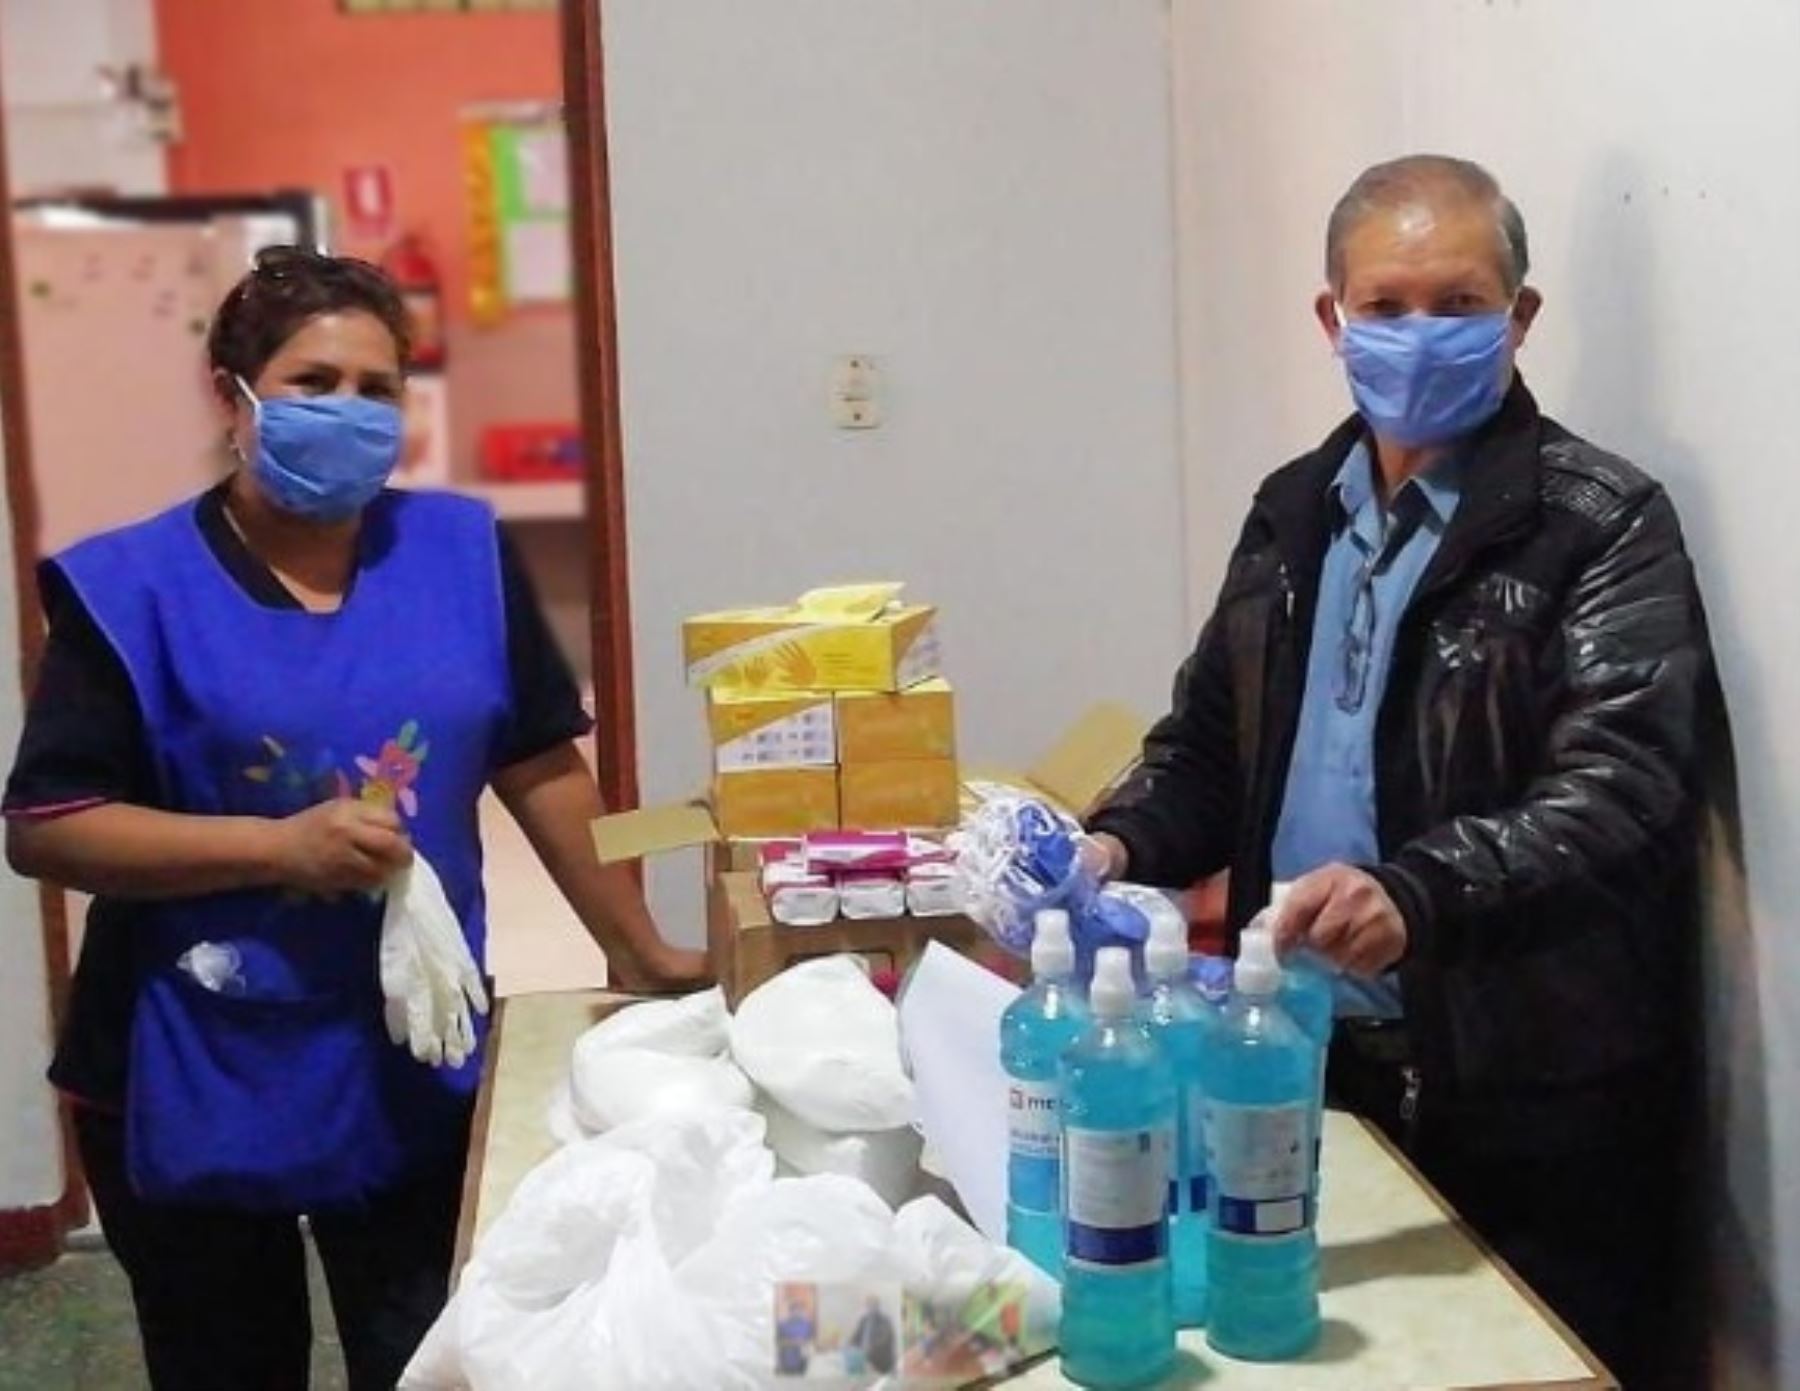 Mascarillas, guantes de látex, hipoclorito y alcohol gel forman parte de la donación que el Comité Internacional de la Cruz Roja (CICR) en Perú entregó al Centro de Acogida Residencial (CAR) Urpi, del Ministerio de la Mujer y Poblaciones Vulnerables (Mimp), en la región Ayacucho.